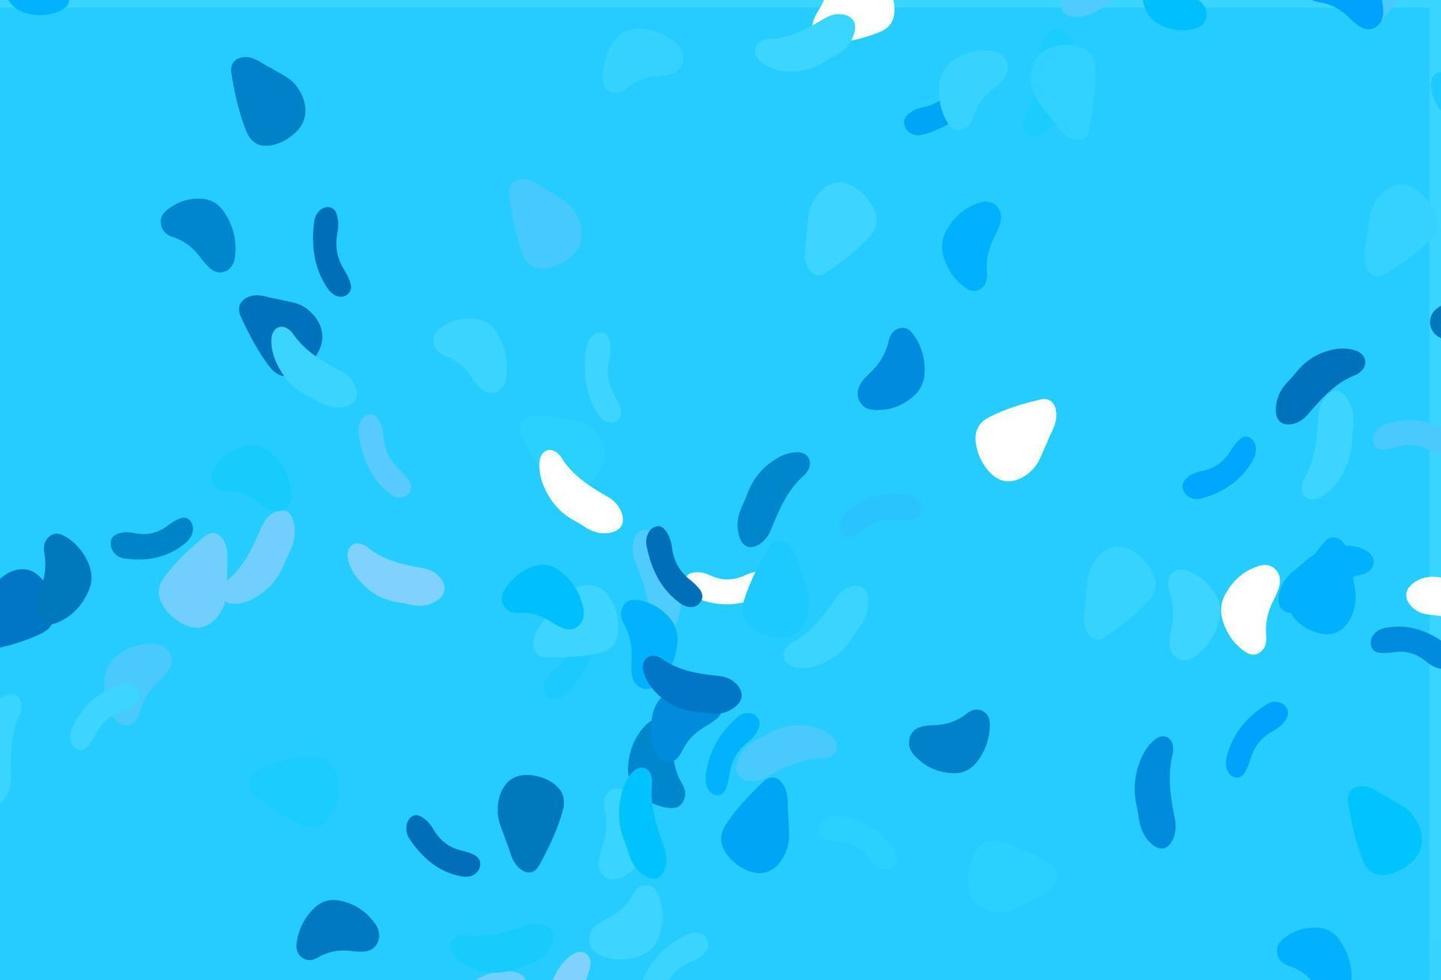 padrão de vetor azul claro com formas caóticas.